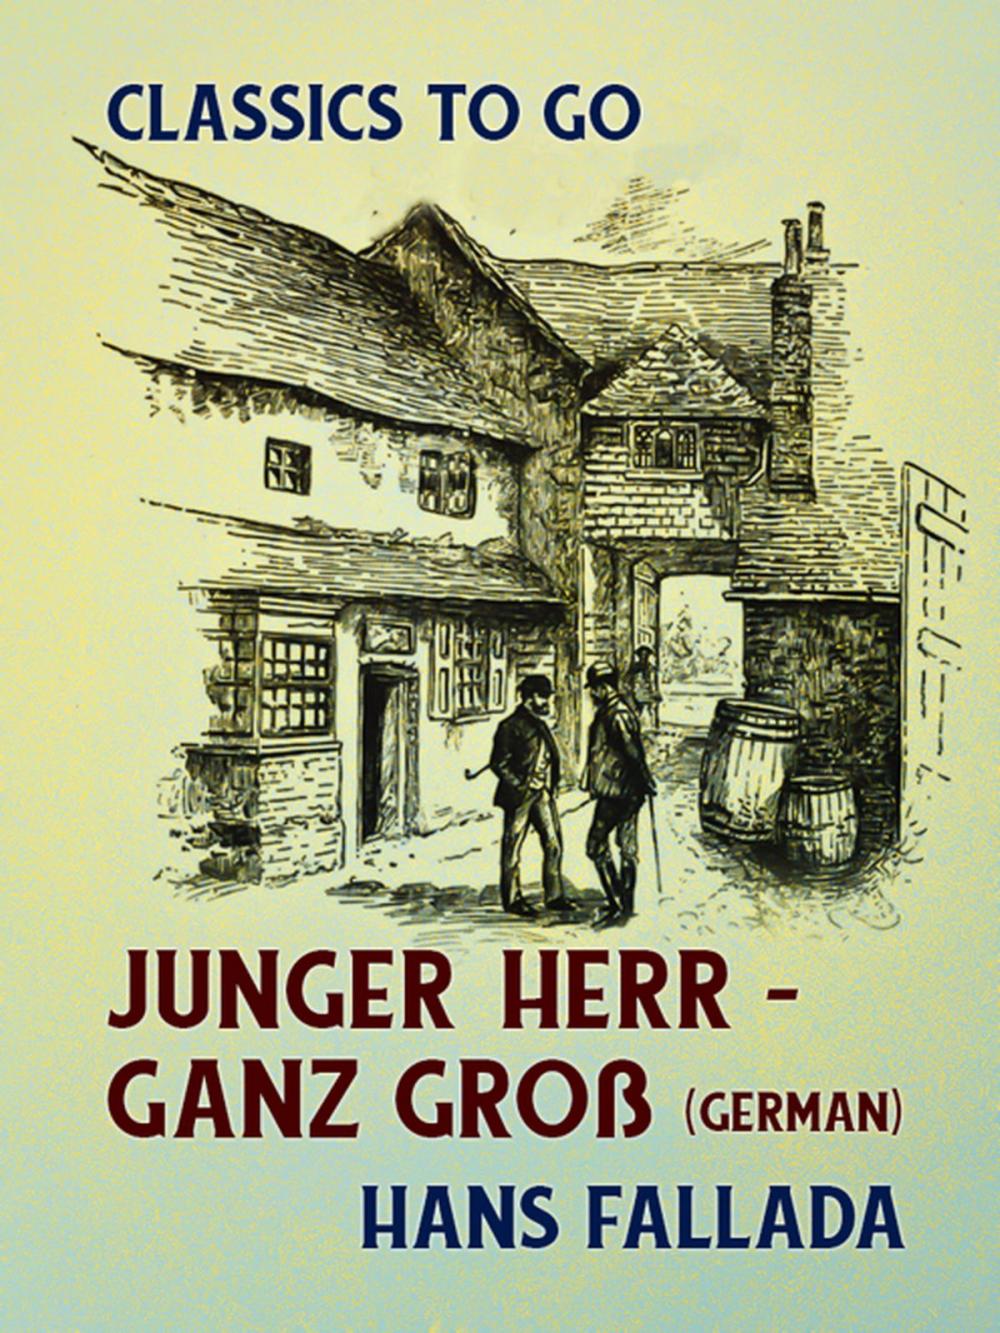 Big bigCover of Junger Herr - ganz groß (German)